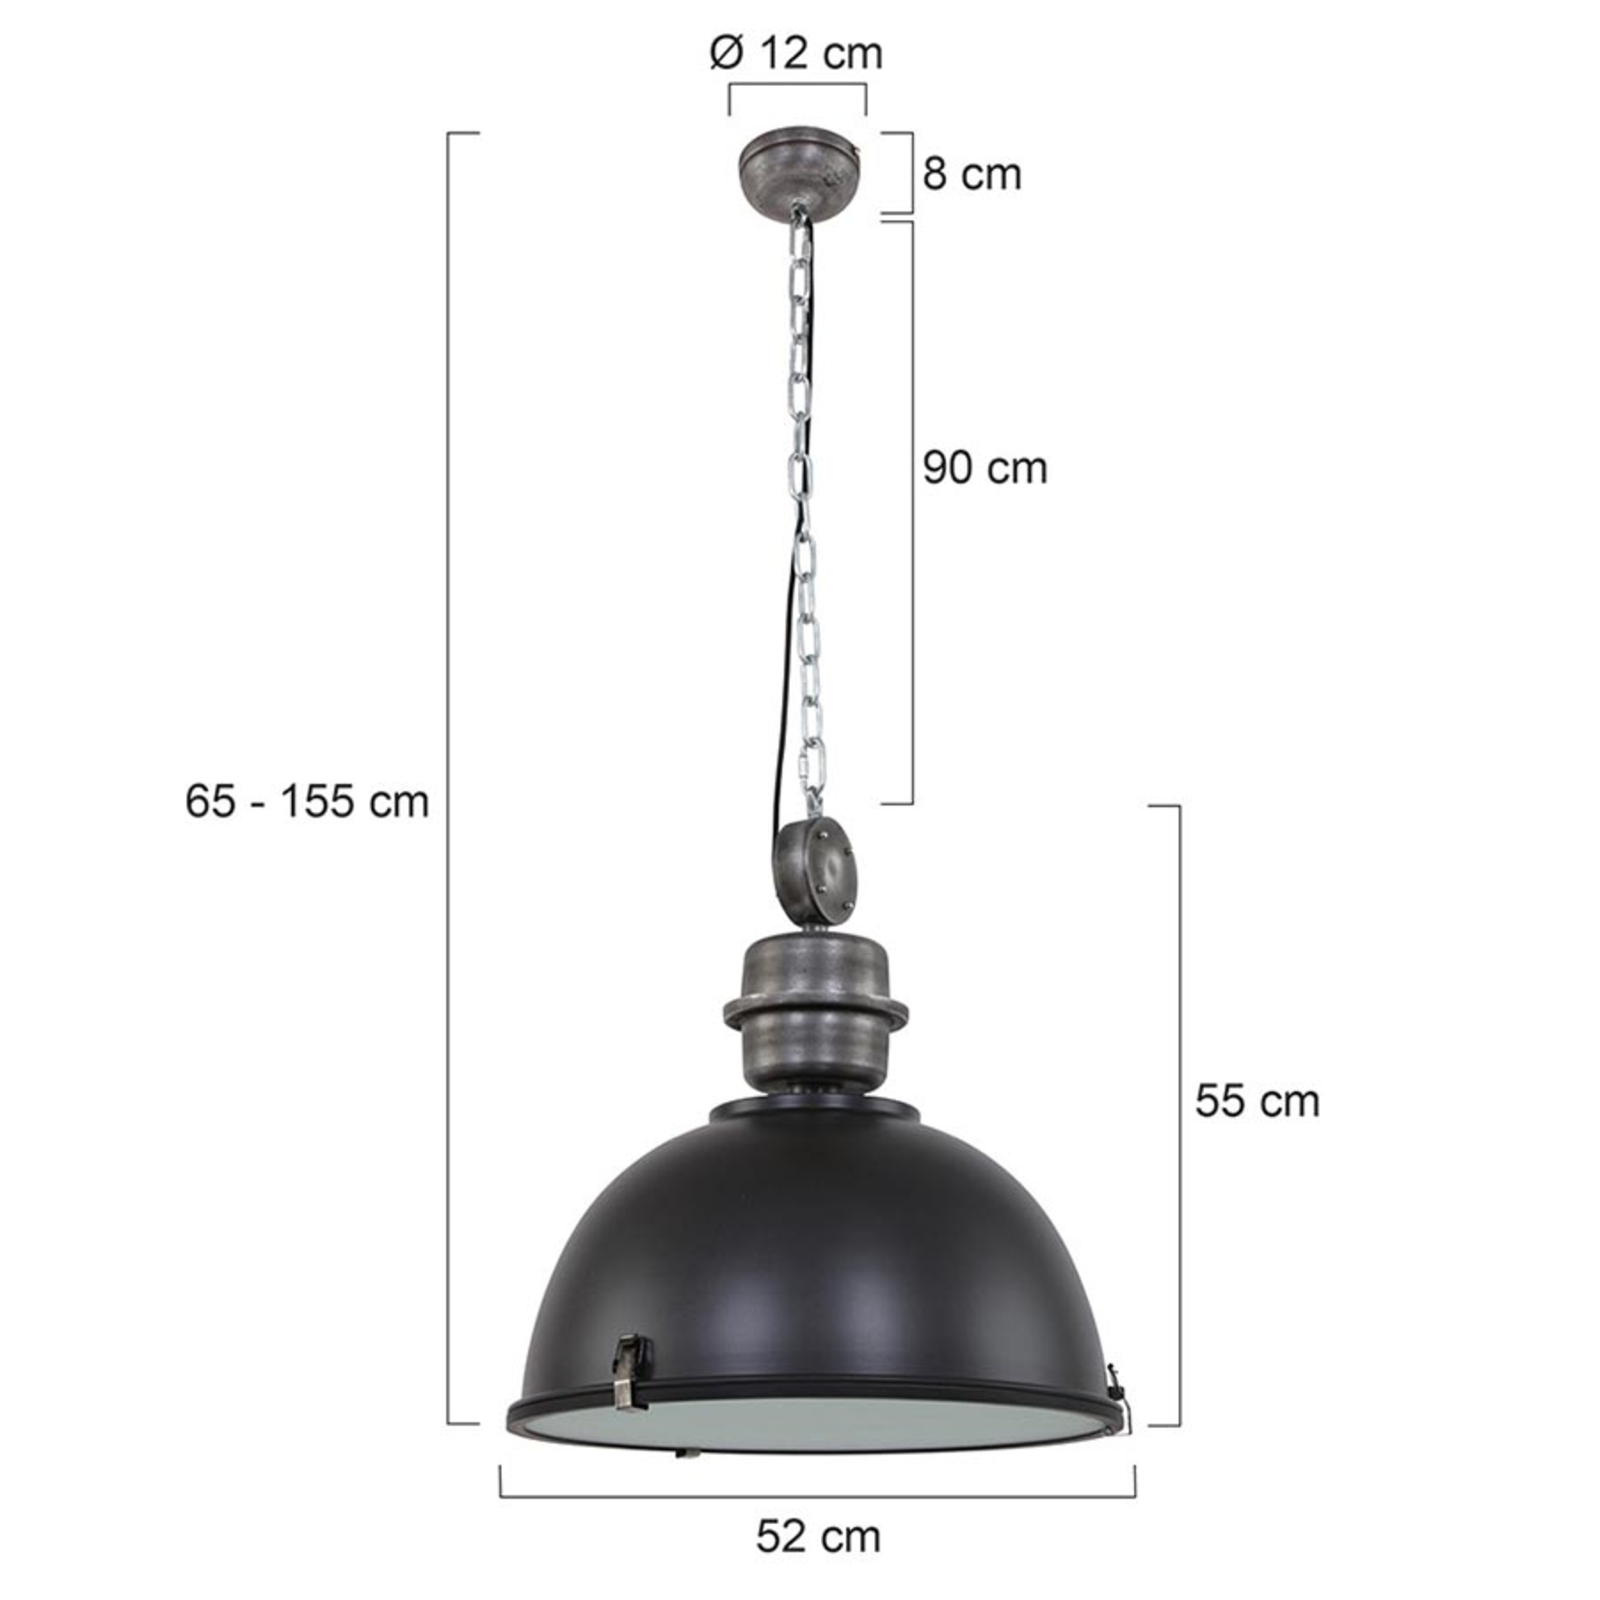 Bikkel L02 black industrial hanging light